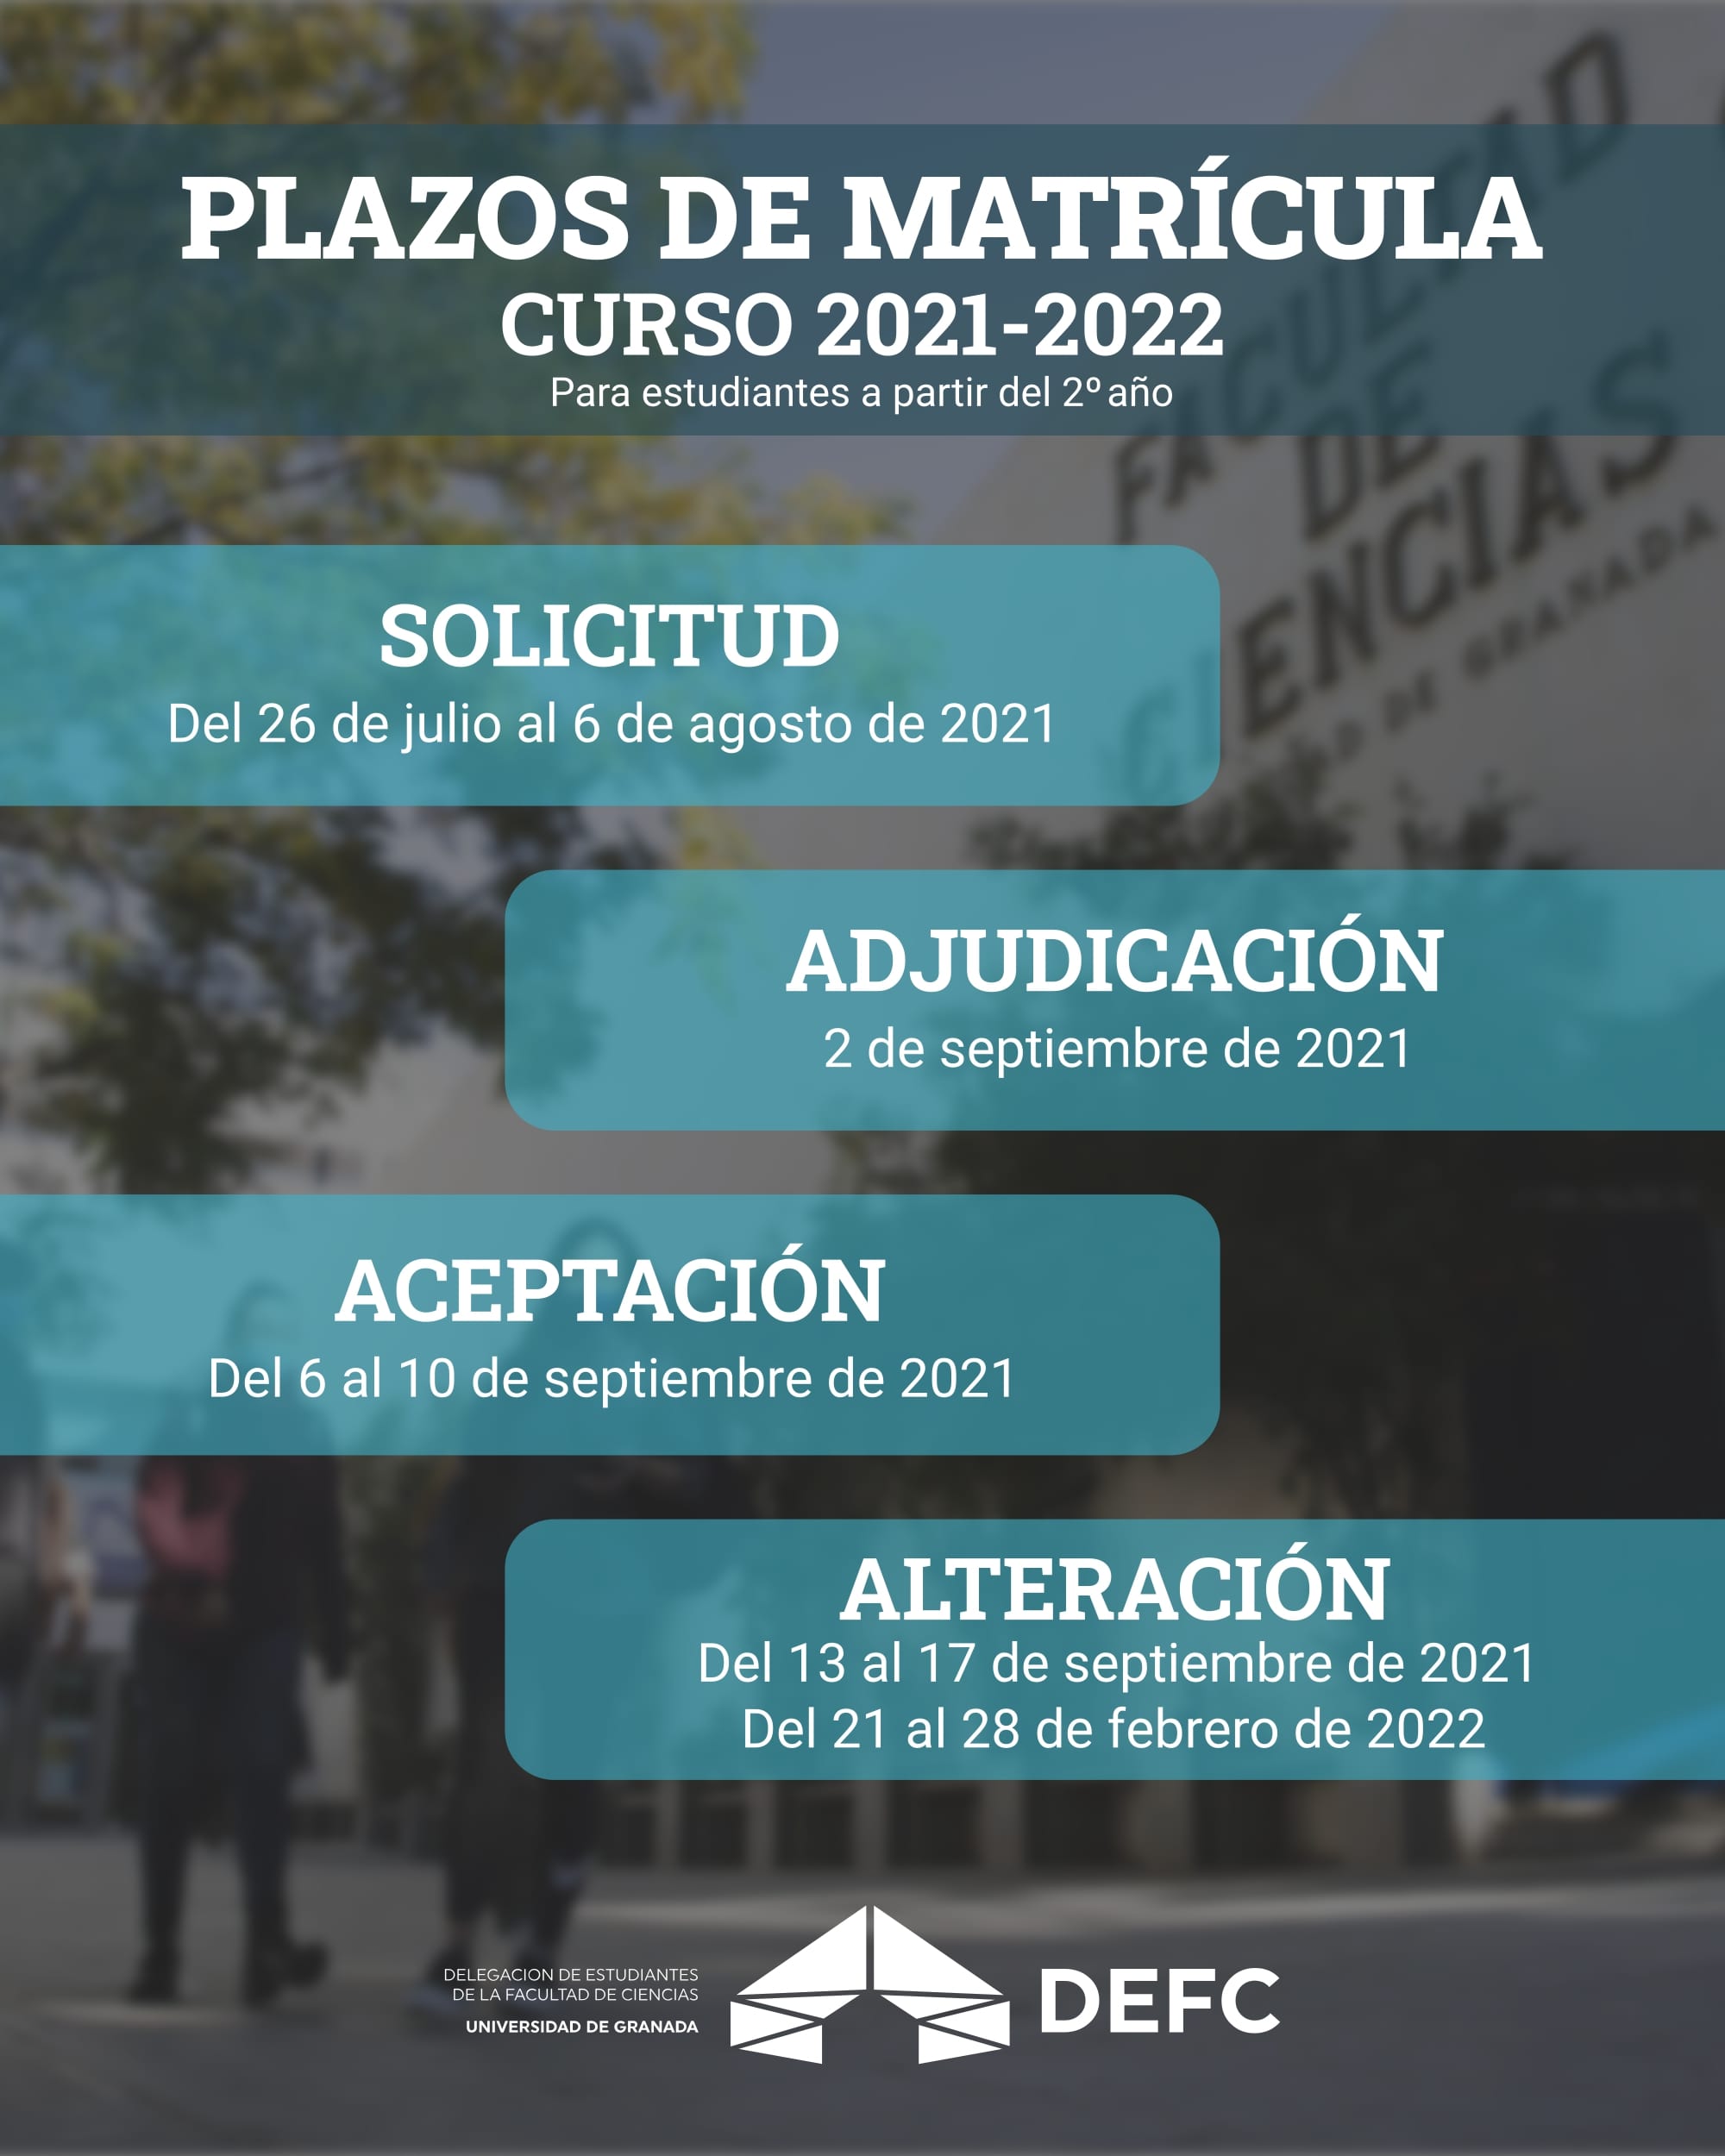 Plazos de matrícula del curso 2021-2022